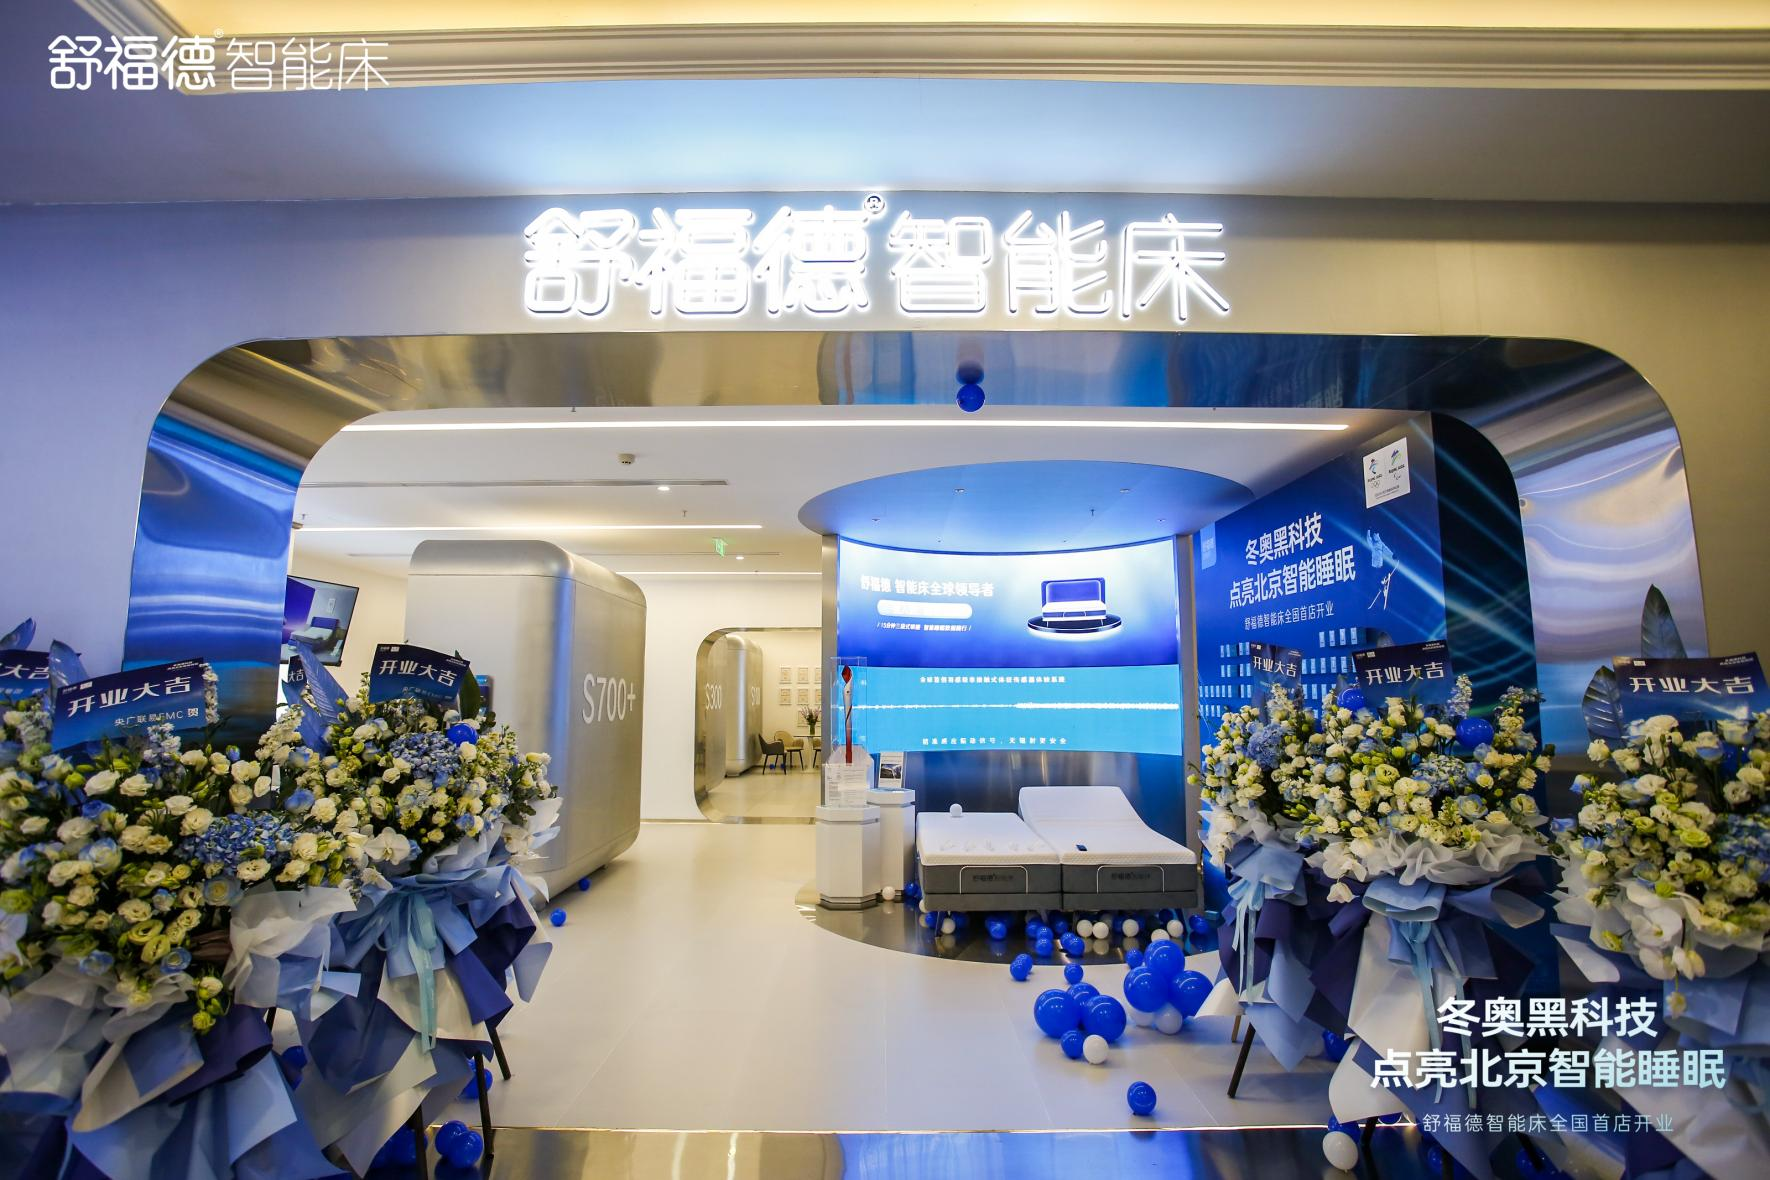 4月19日，随着舒福德智能床全国首店在北京盛大开业，这款让网友心心念念的智能床终于走进普通消费者身边